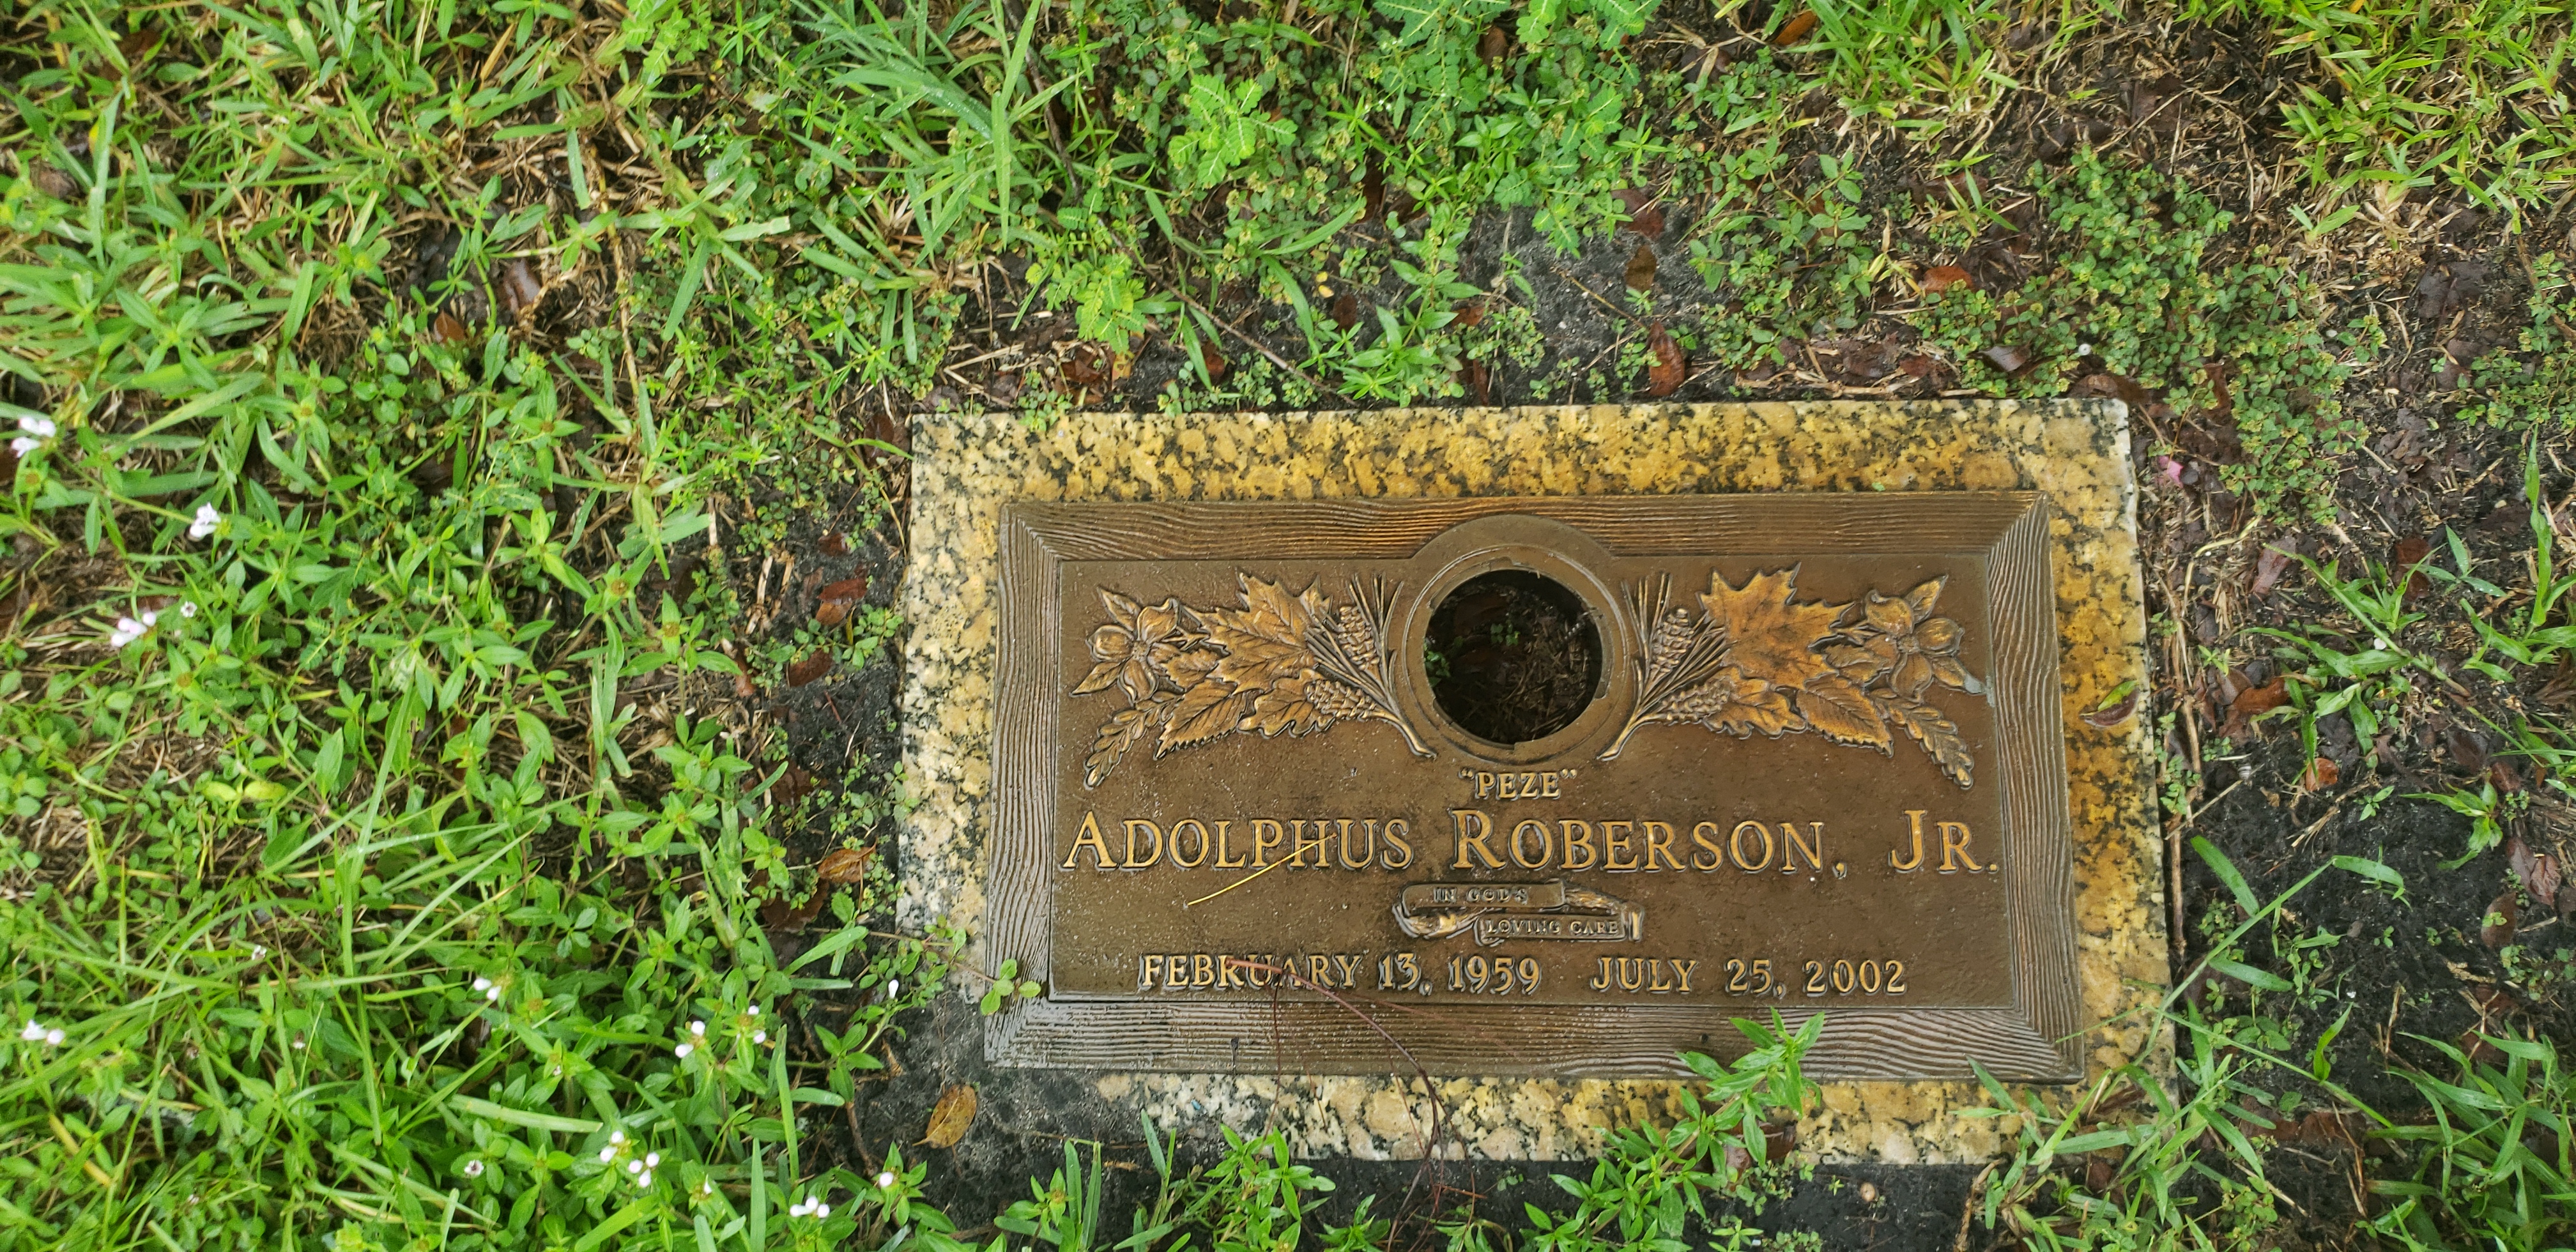 Adolphus Roberson, Jr